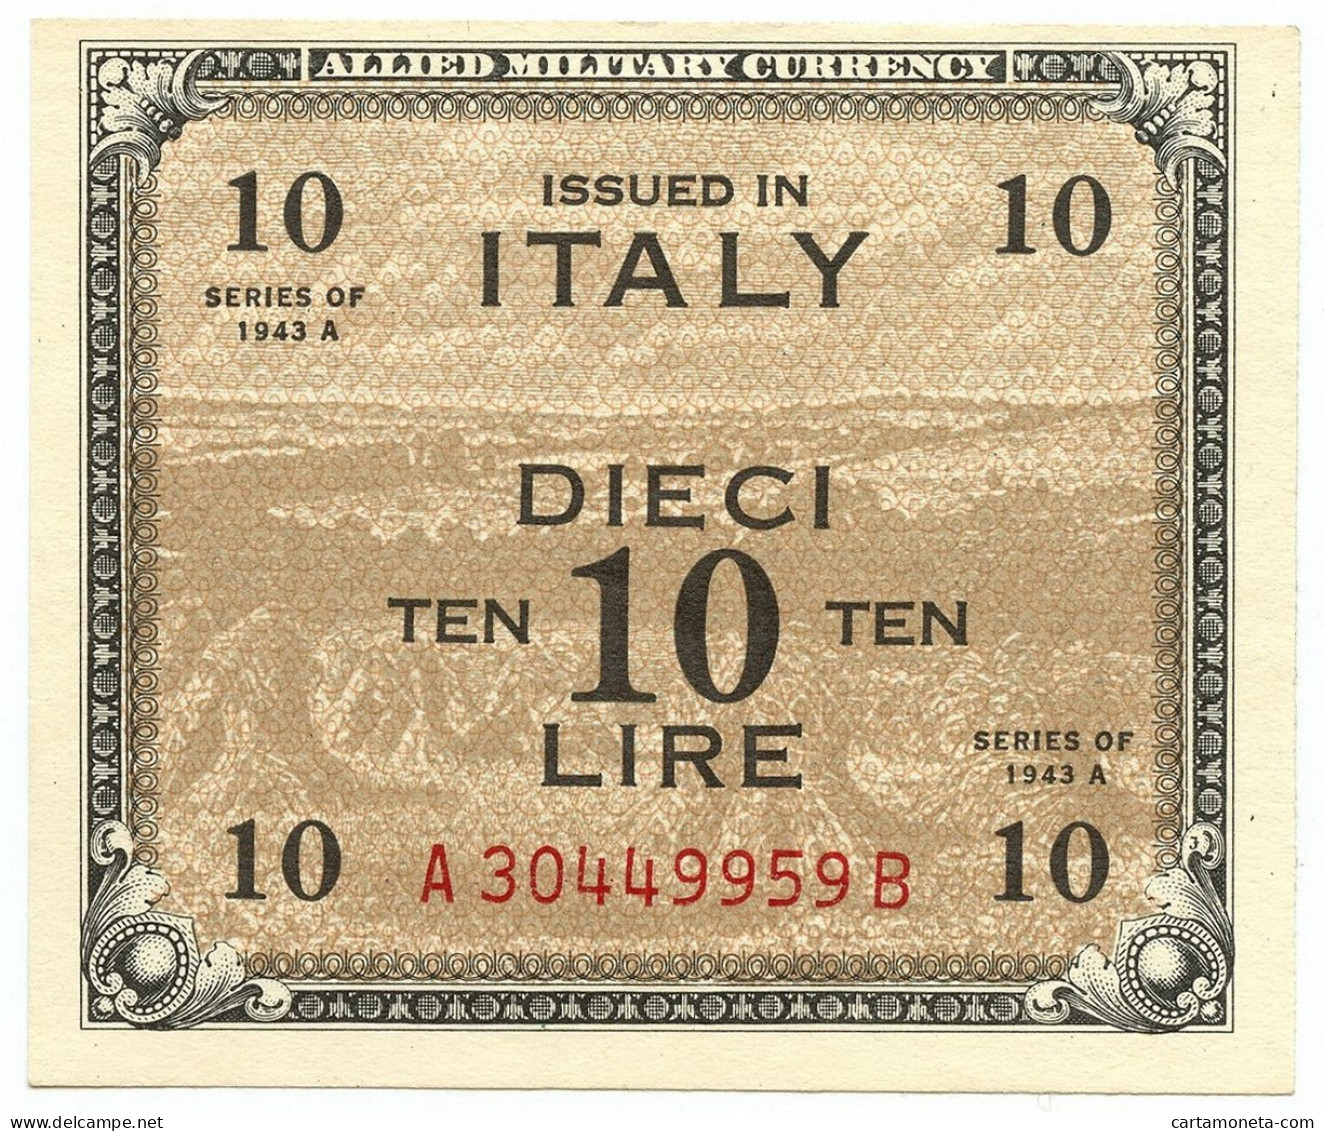 10 LIRE OCCUPAZIONE AMERICANA IN ITALIA BILINGUE FLC A-B 1943 A QFDS - 2. WK - Alliierte Besatzung